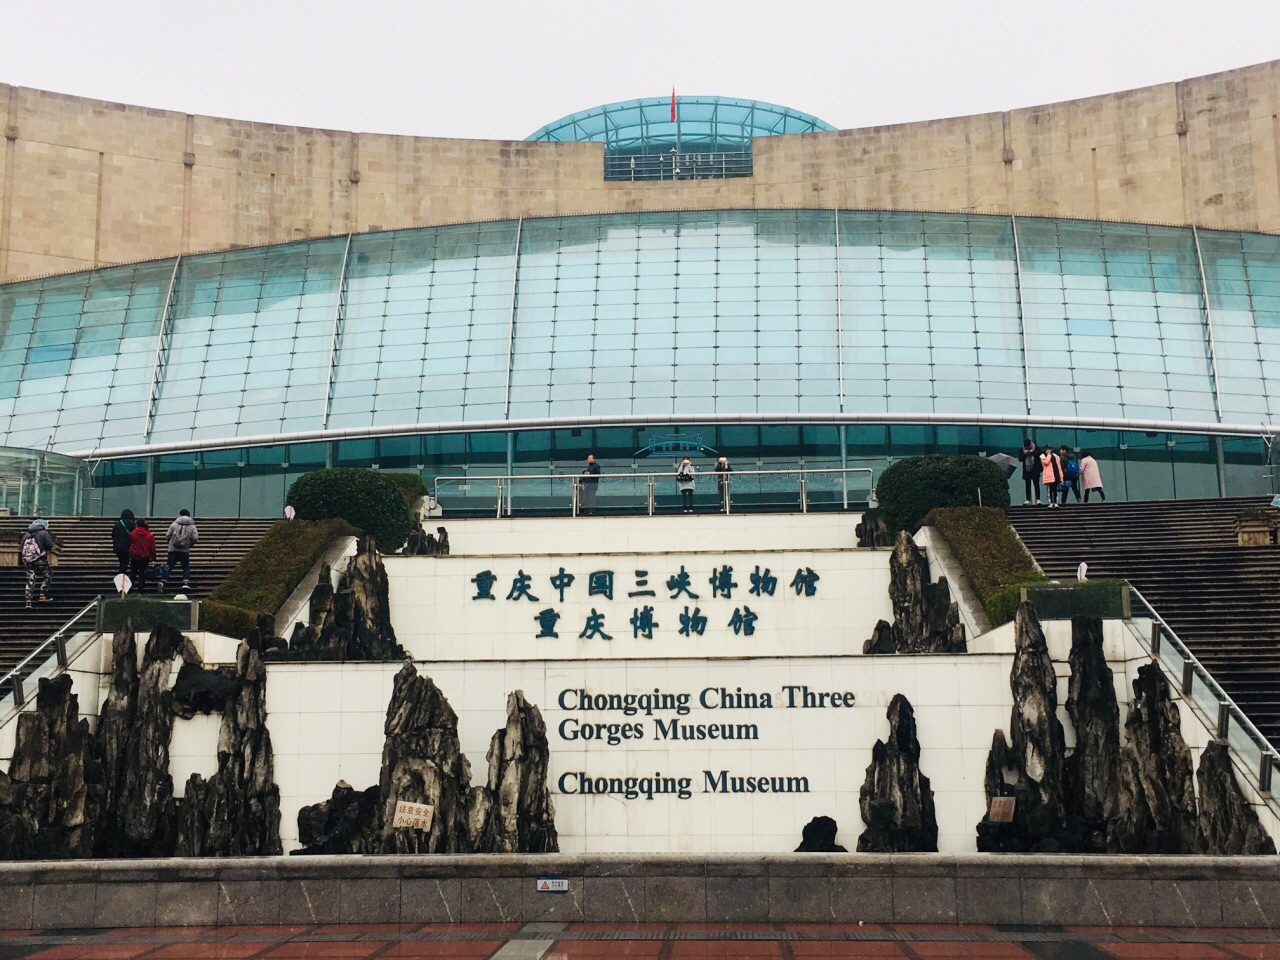 不只是三峡的内容,是重庆博物馆,内容很棒,一级博物馆!